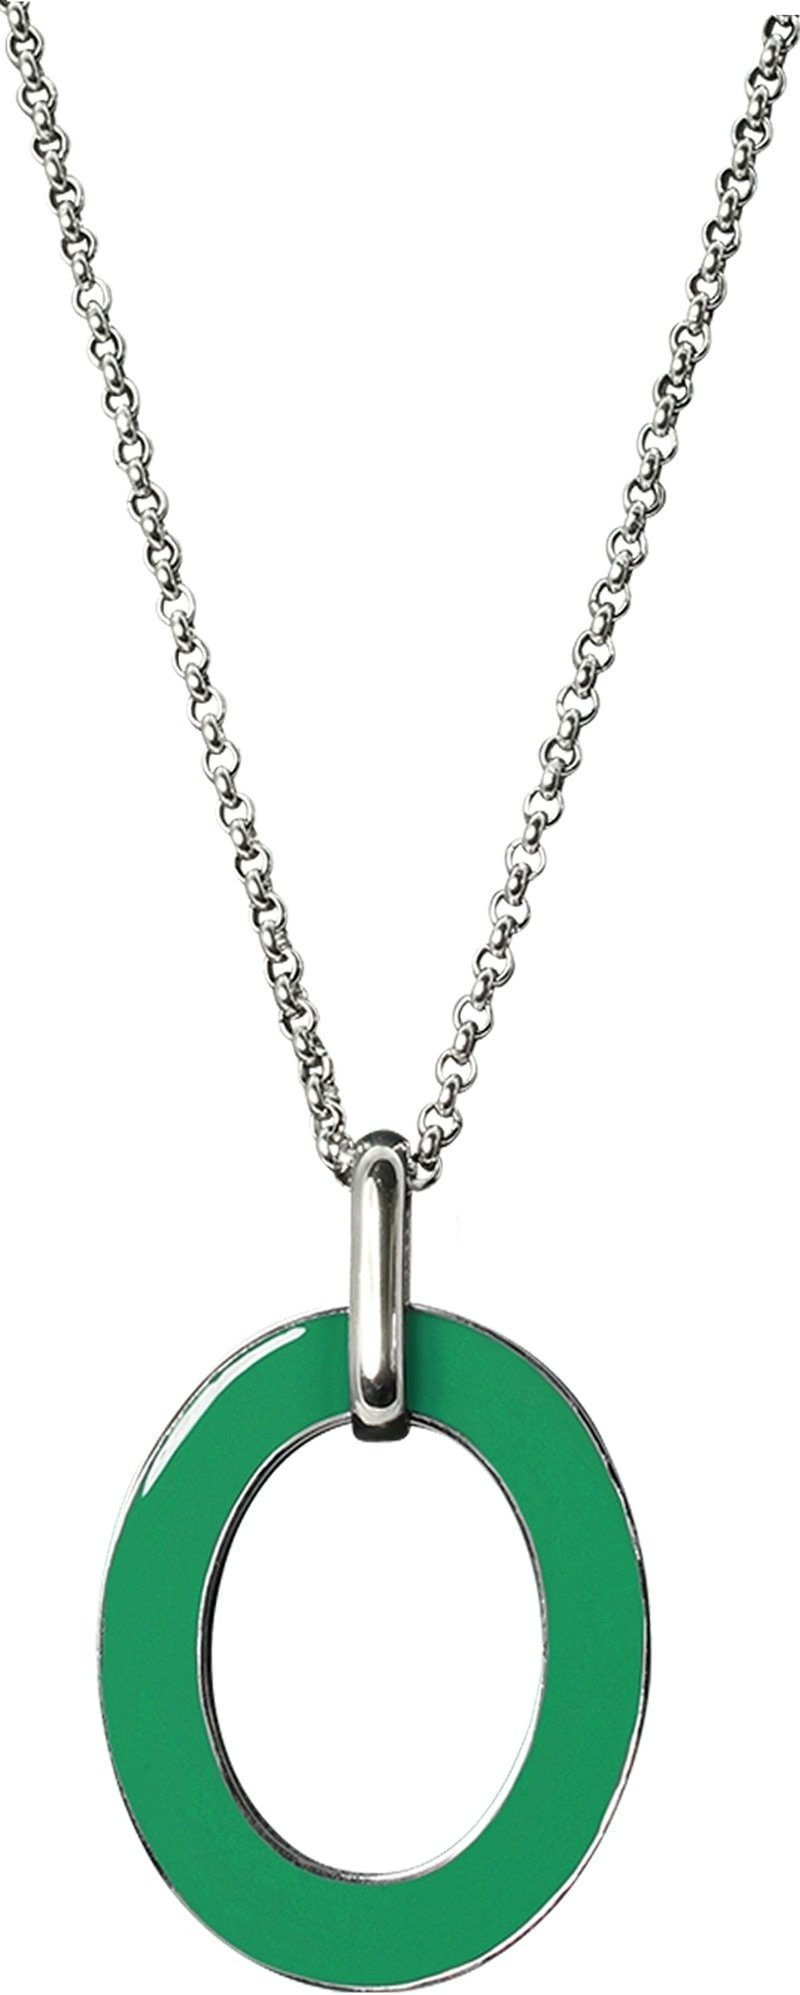 Amello Edelstahlkette Amello Oval Halskette grün weiß (Halskette), Damen-Halskette (Oval) ca. 80cm + 4cm Verlängerung, Edelstahl (Stainle | Ketten ohne Anhänger